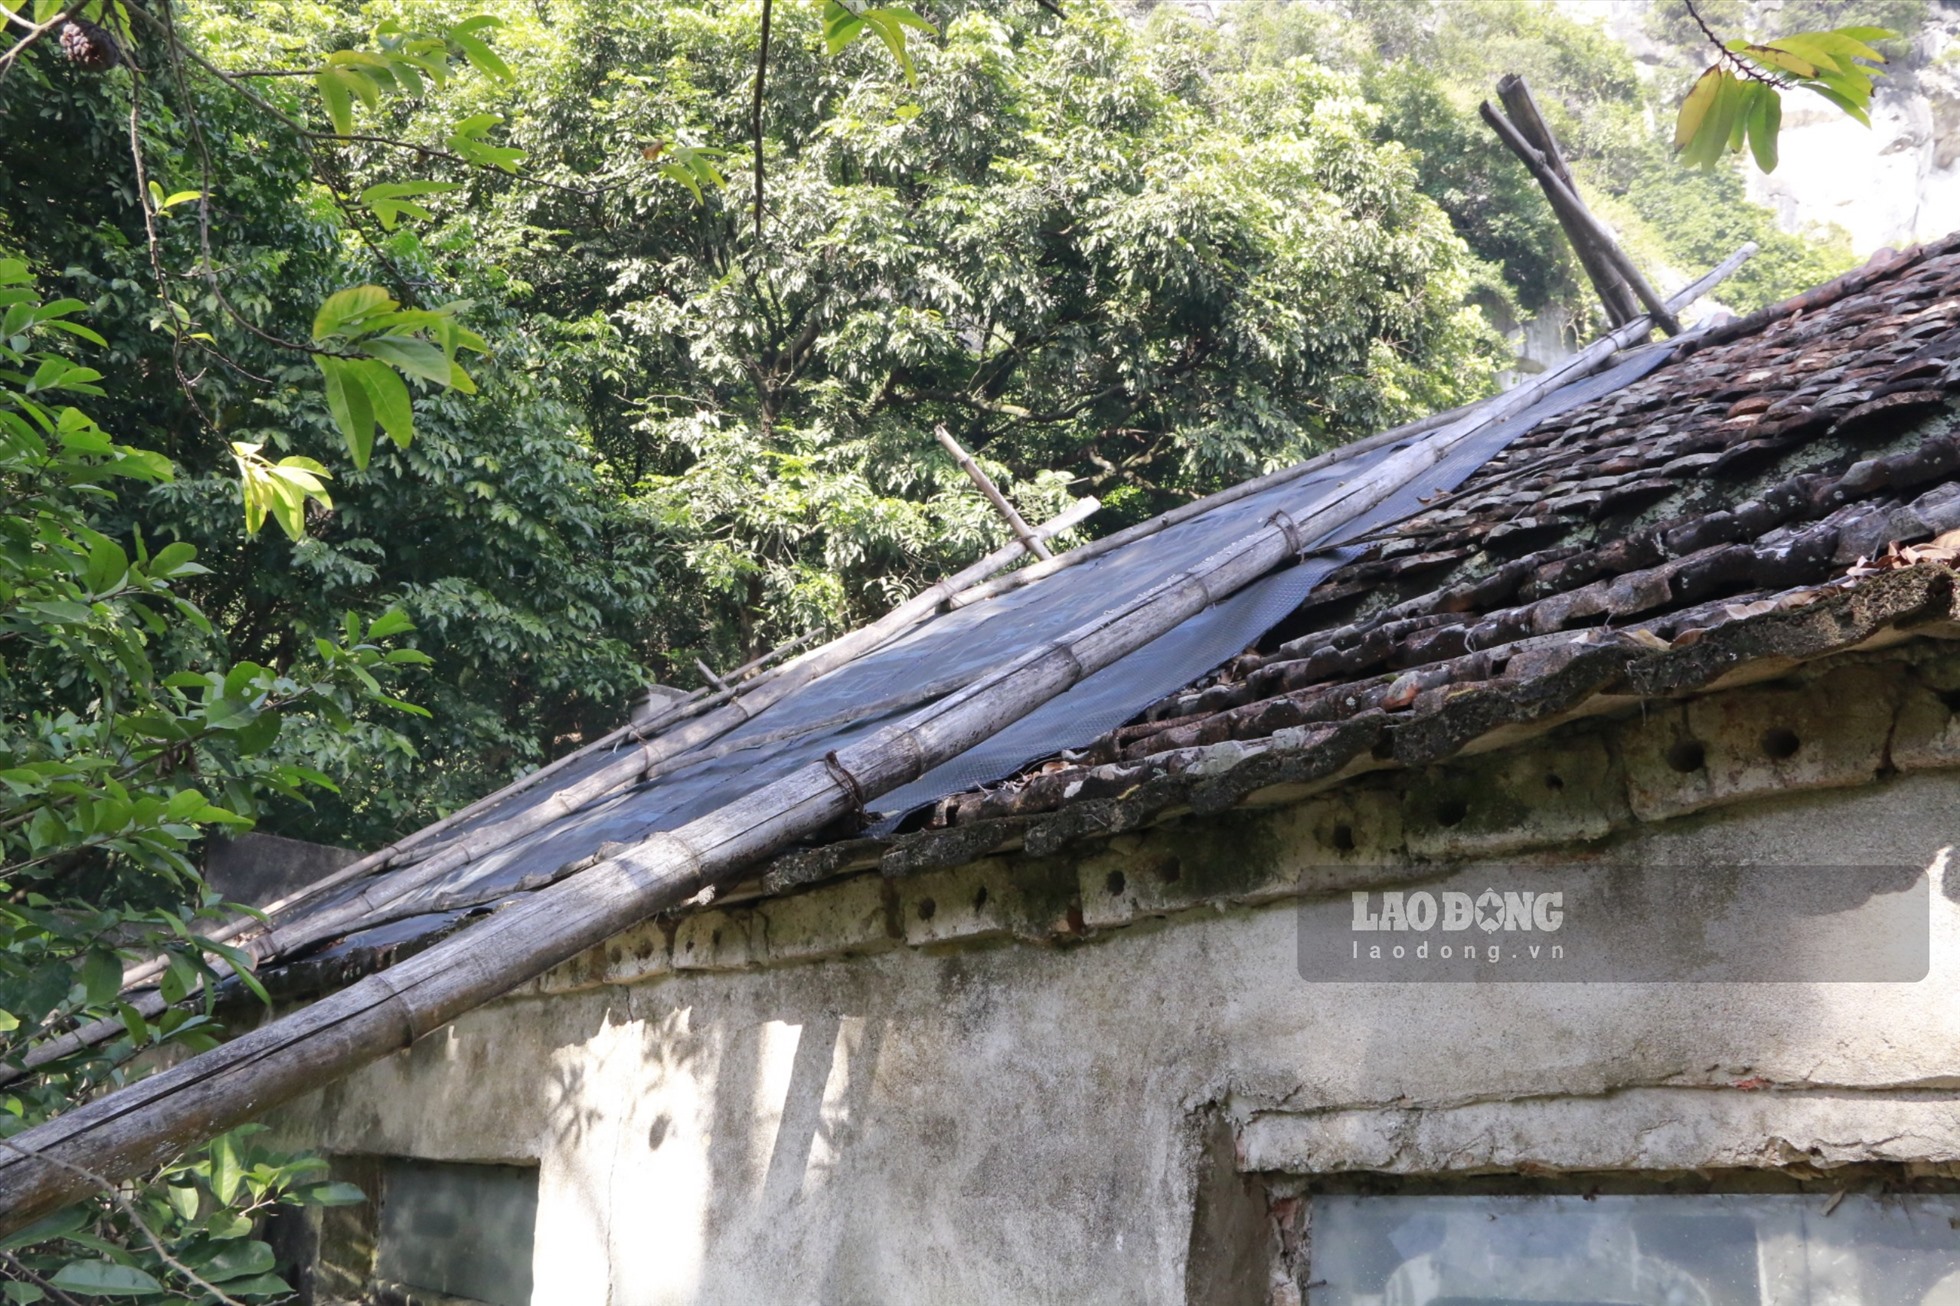  Phần mái của ngôi chùa đã bị mục nát, nhân dân và nhà chùa phải dùng bạt che lại để nước mưa không dột vào bên trong. Ảnh: NT.